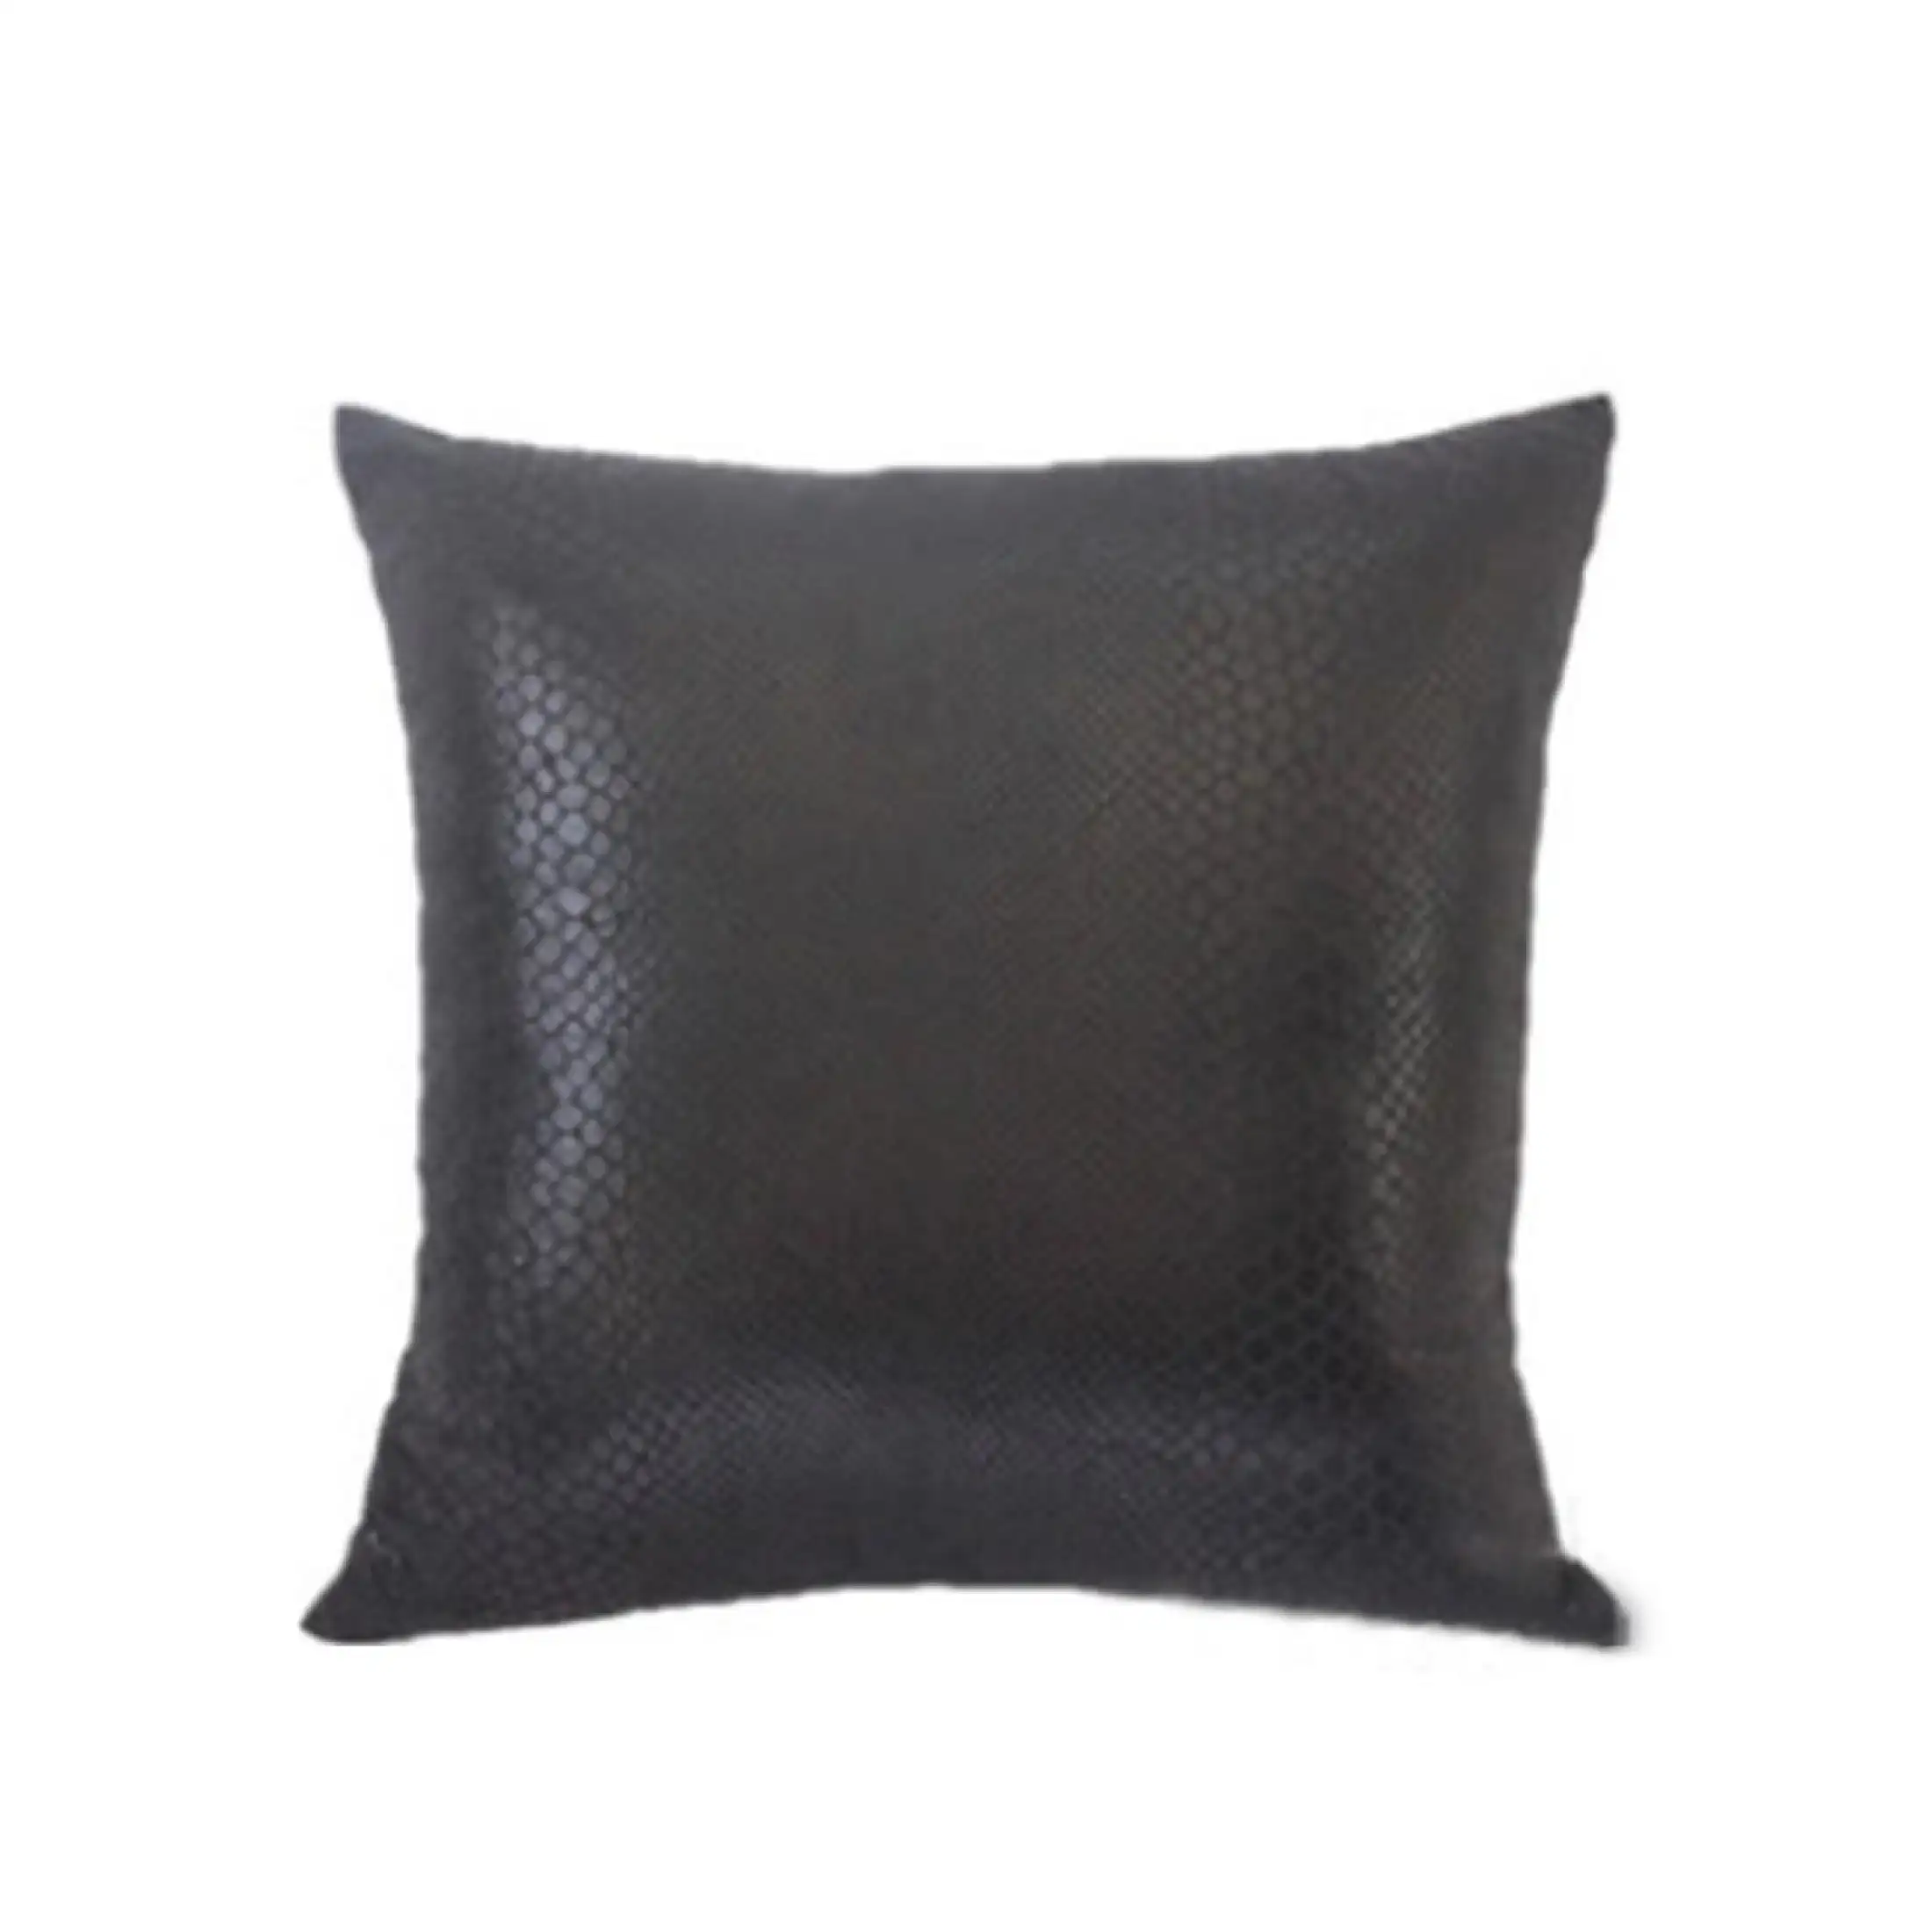 Ka Huse 1pc 45x45cm Pillow Faux Leather Cushion Cover Pillowcase Soft Room Sofa Decor Lazada Singapore